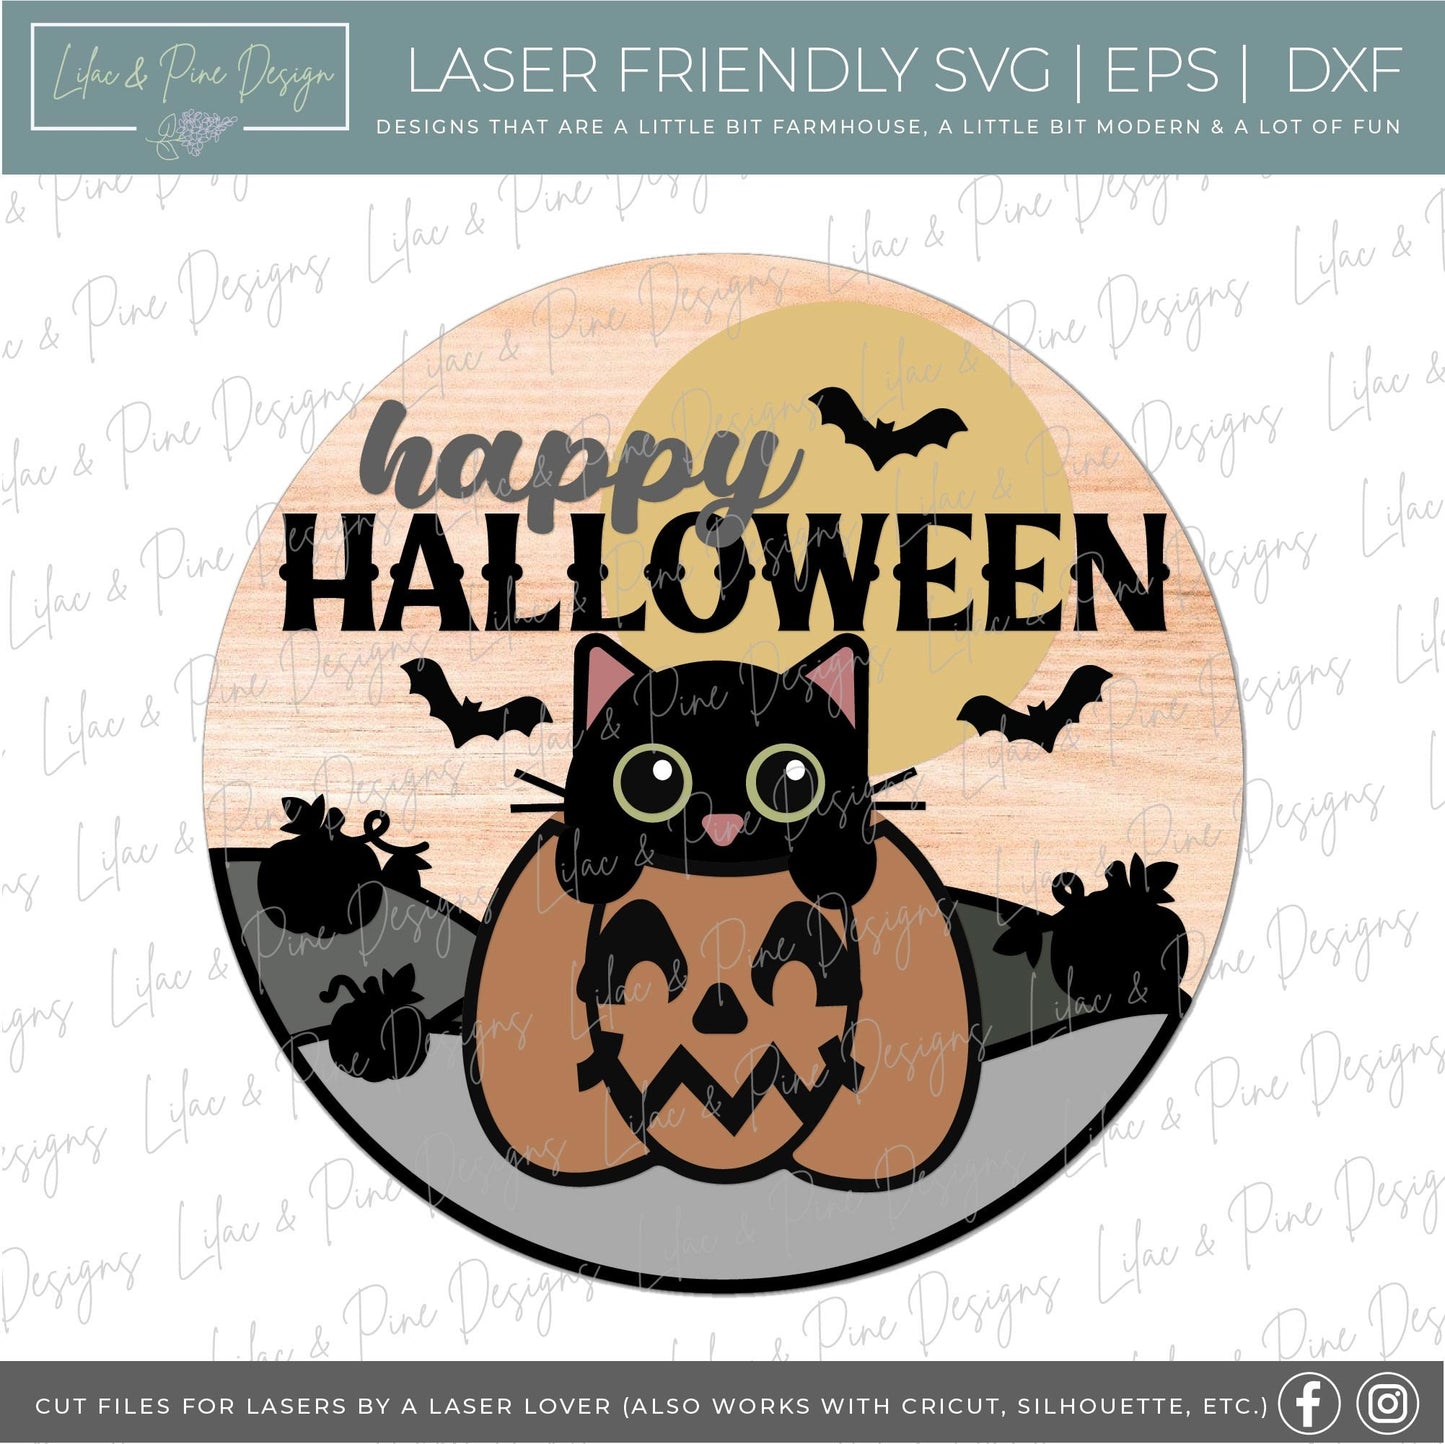 Halloween sign, Happy Halloween SVG, Halloween door hanger SVG, Black Cat welcome sign, cat in pumpkin svg, Glowforge Svg, laser cut file